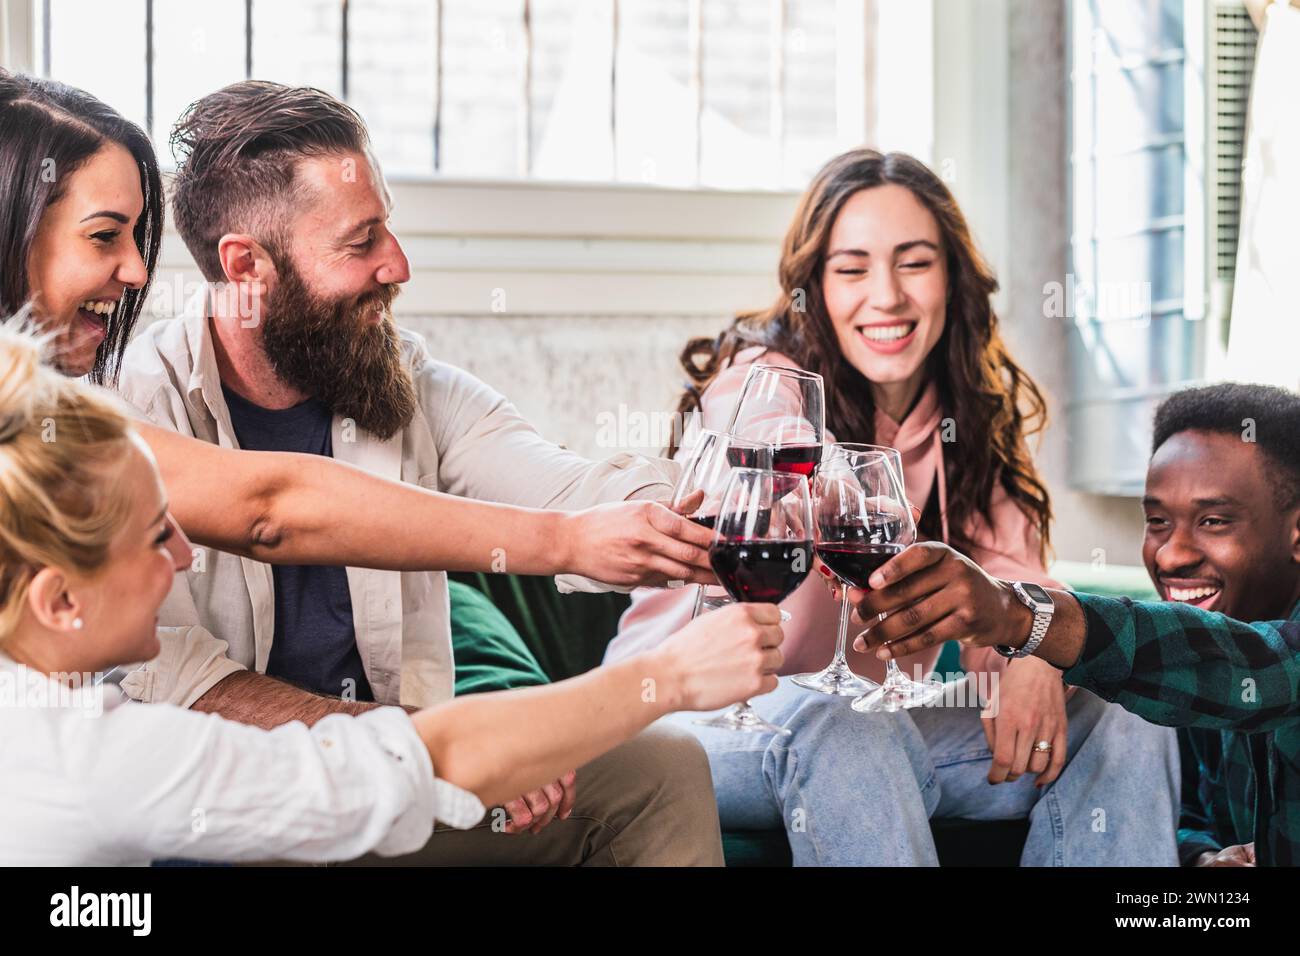 Eine lebhafte Gruppe von Freunden tobt mit Rotwein und teilt einen Moment der Freude und der Feier in einem hell beleuchteten Wohnzimmer, um das Gefühl des Kameraden zu fördern Stockfoto